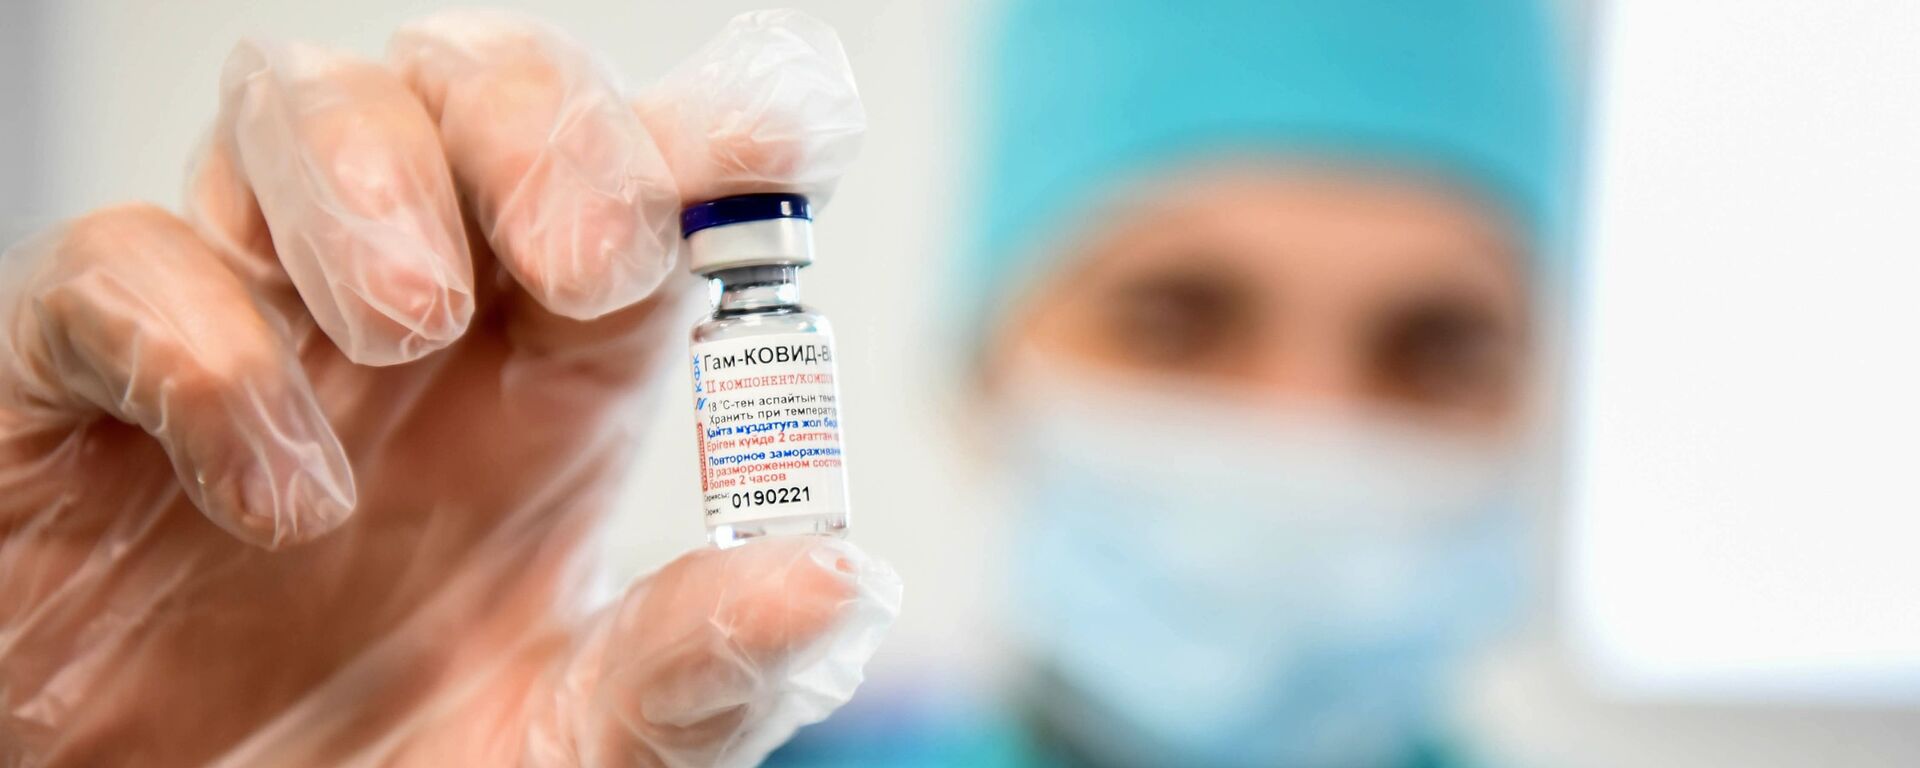  واکسن اسپوتنیک لایت، خطر ابتلا به کرونا را به نصف کاهش می دهد - اسپوتنیک ایران  , 1920, 04.04.2021